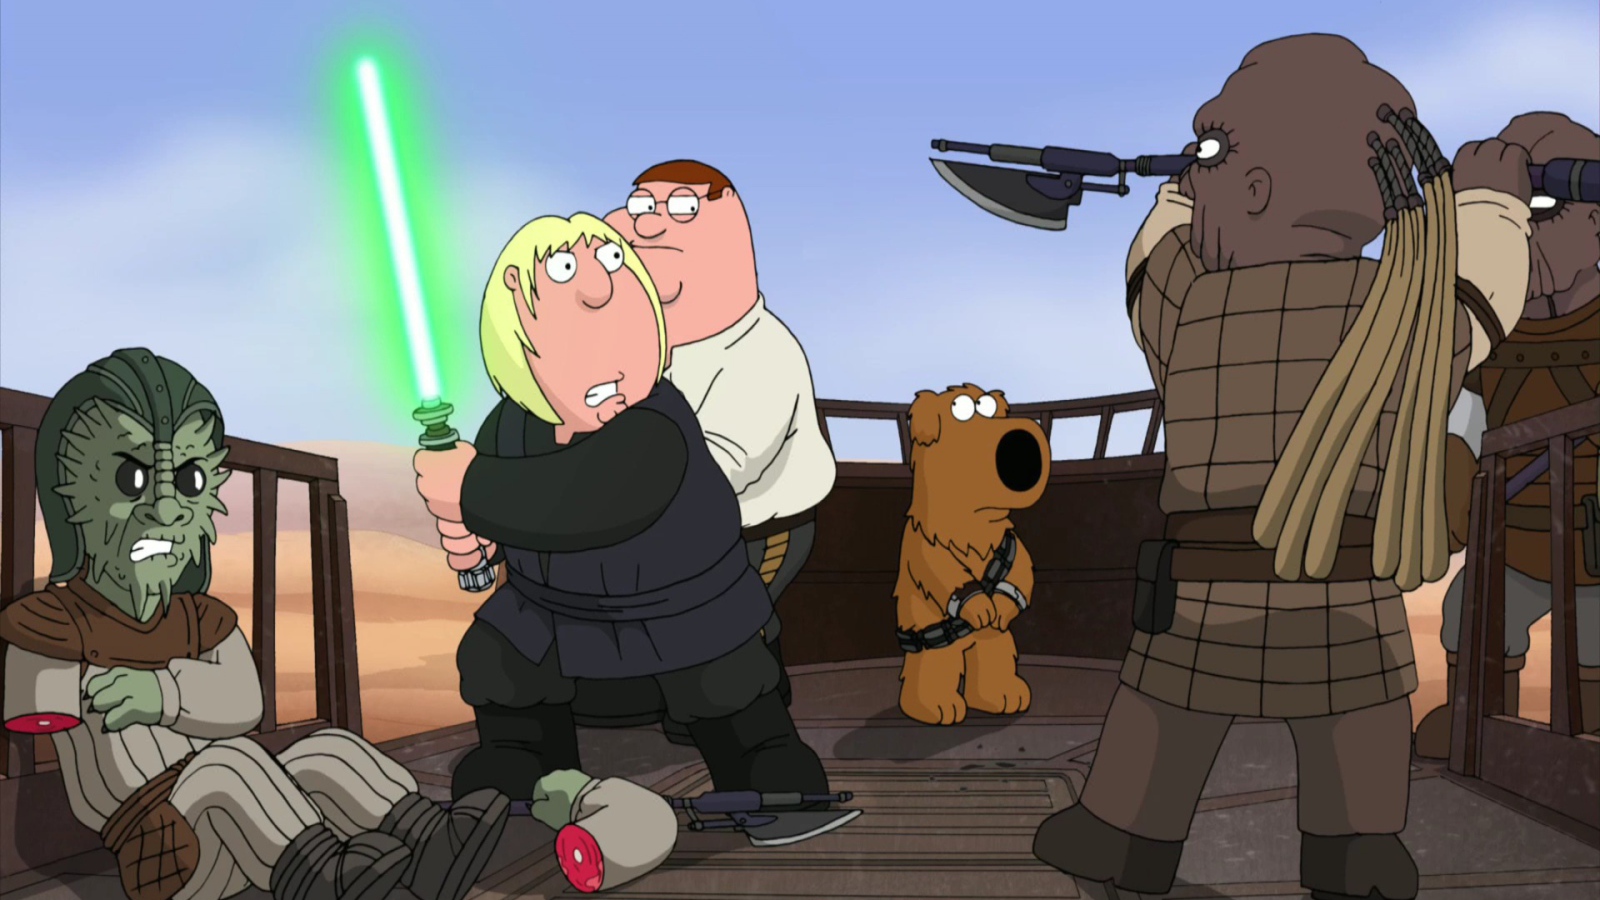 Family Guy Star Wars Desktop Wallpaper